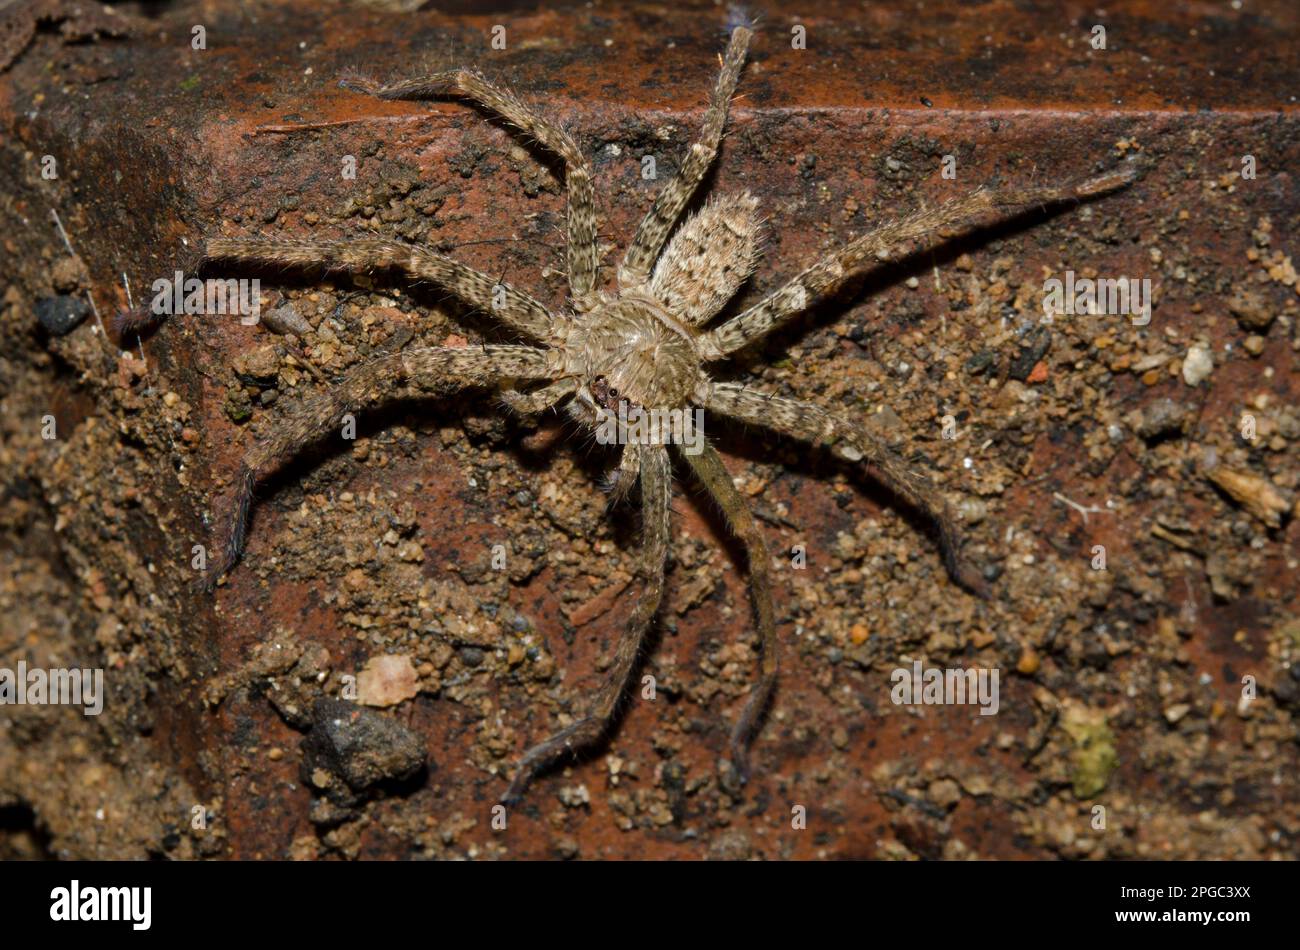 Huntsman Spider, Heteropoda venatoria, Klungkung, Bali, Indonesia Stock Photo